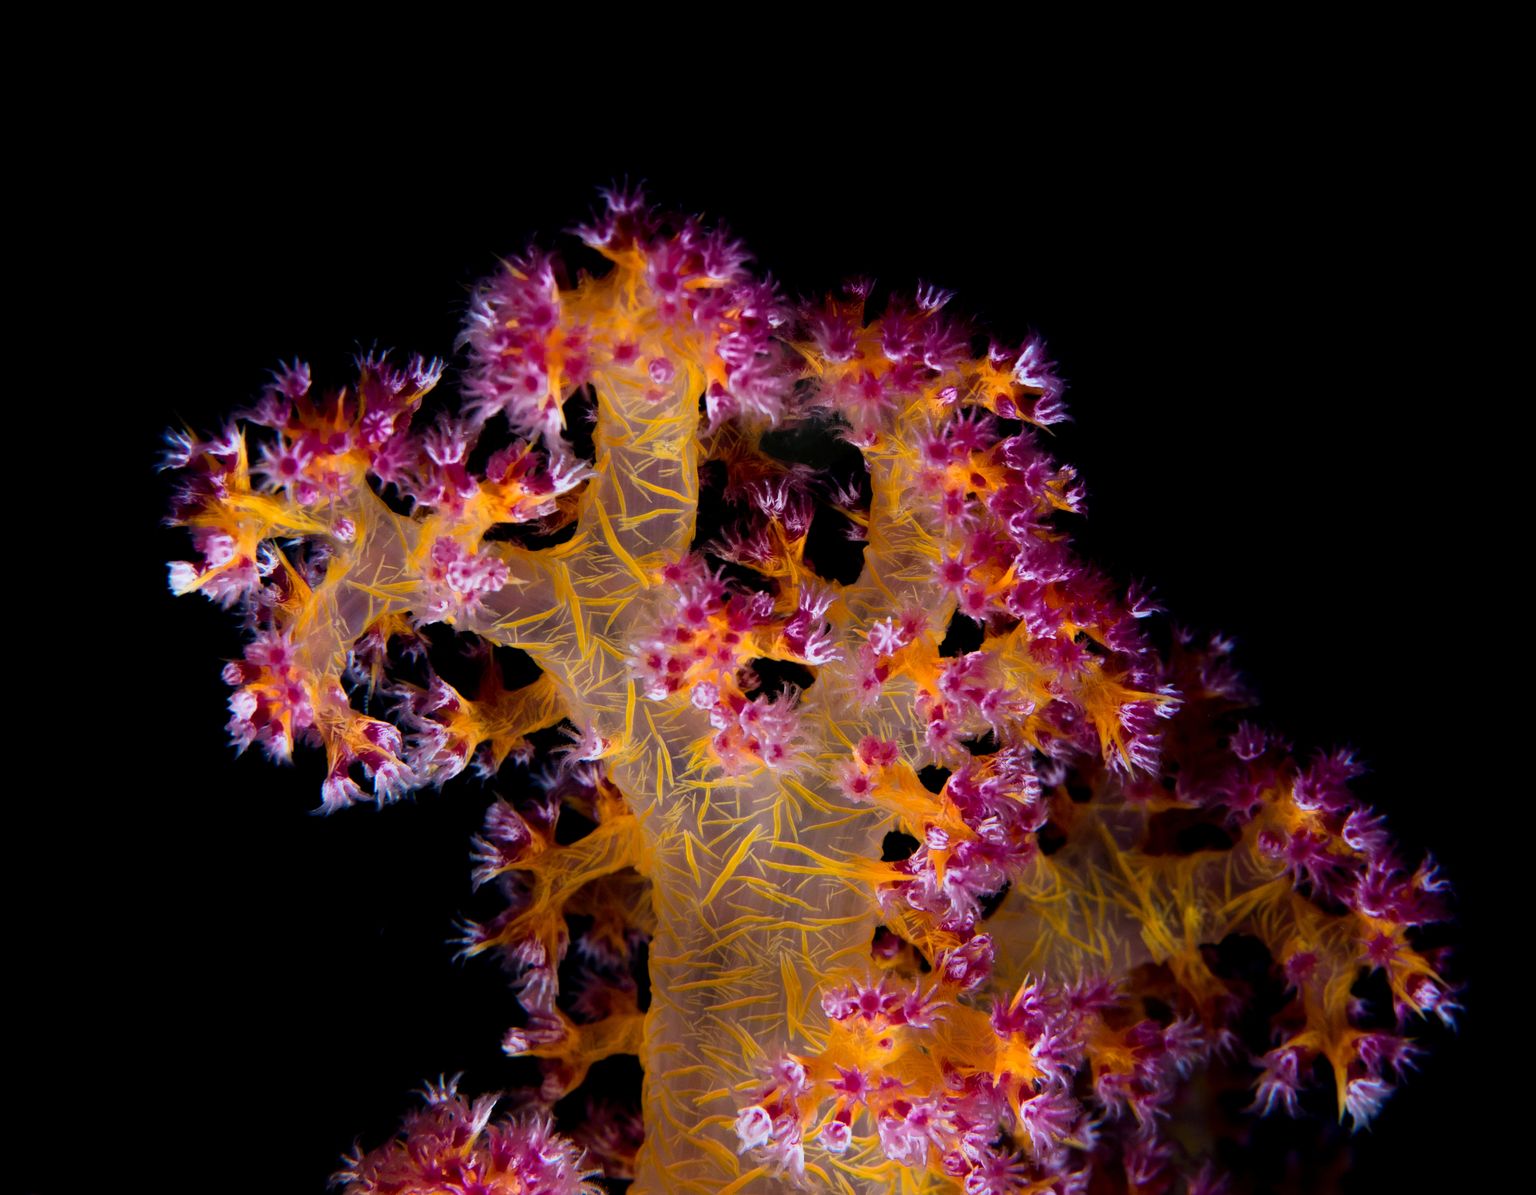 Teadlased usuvad, et koralle saab kaitsta probiootikumidega